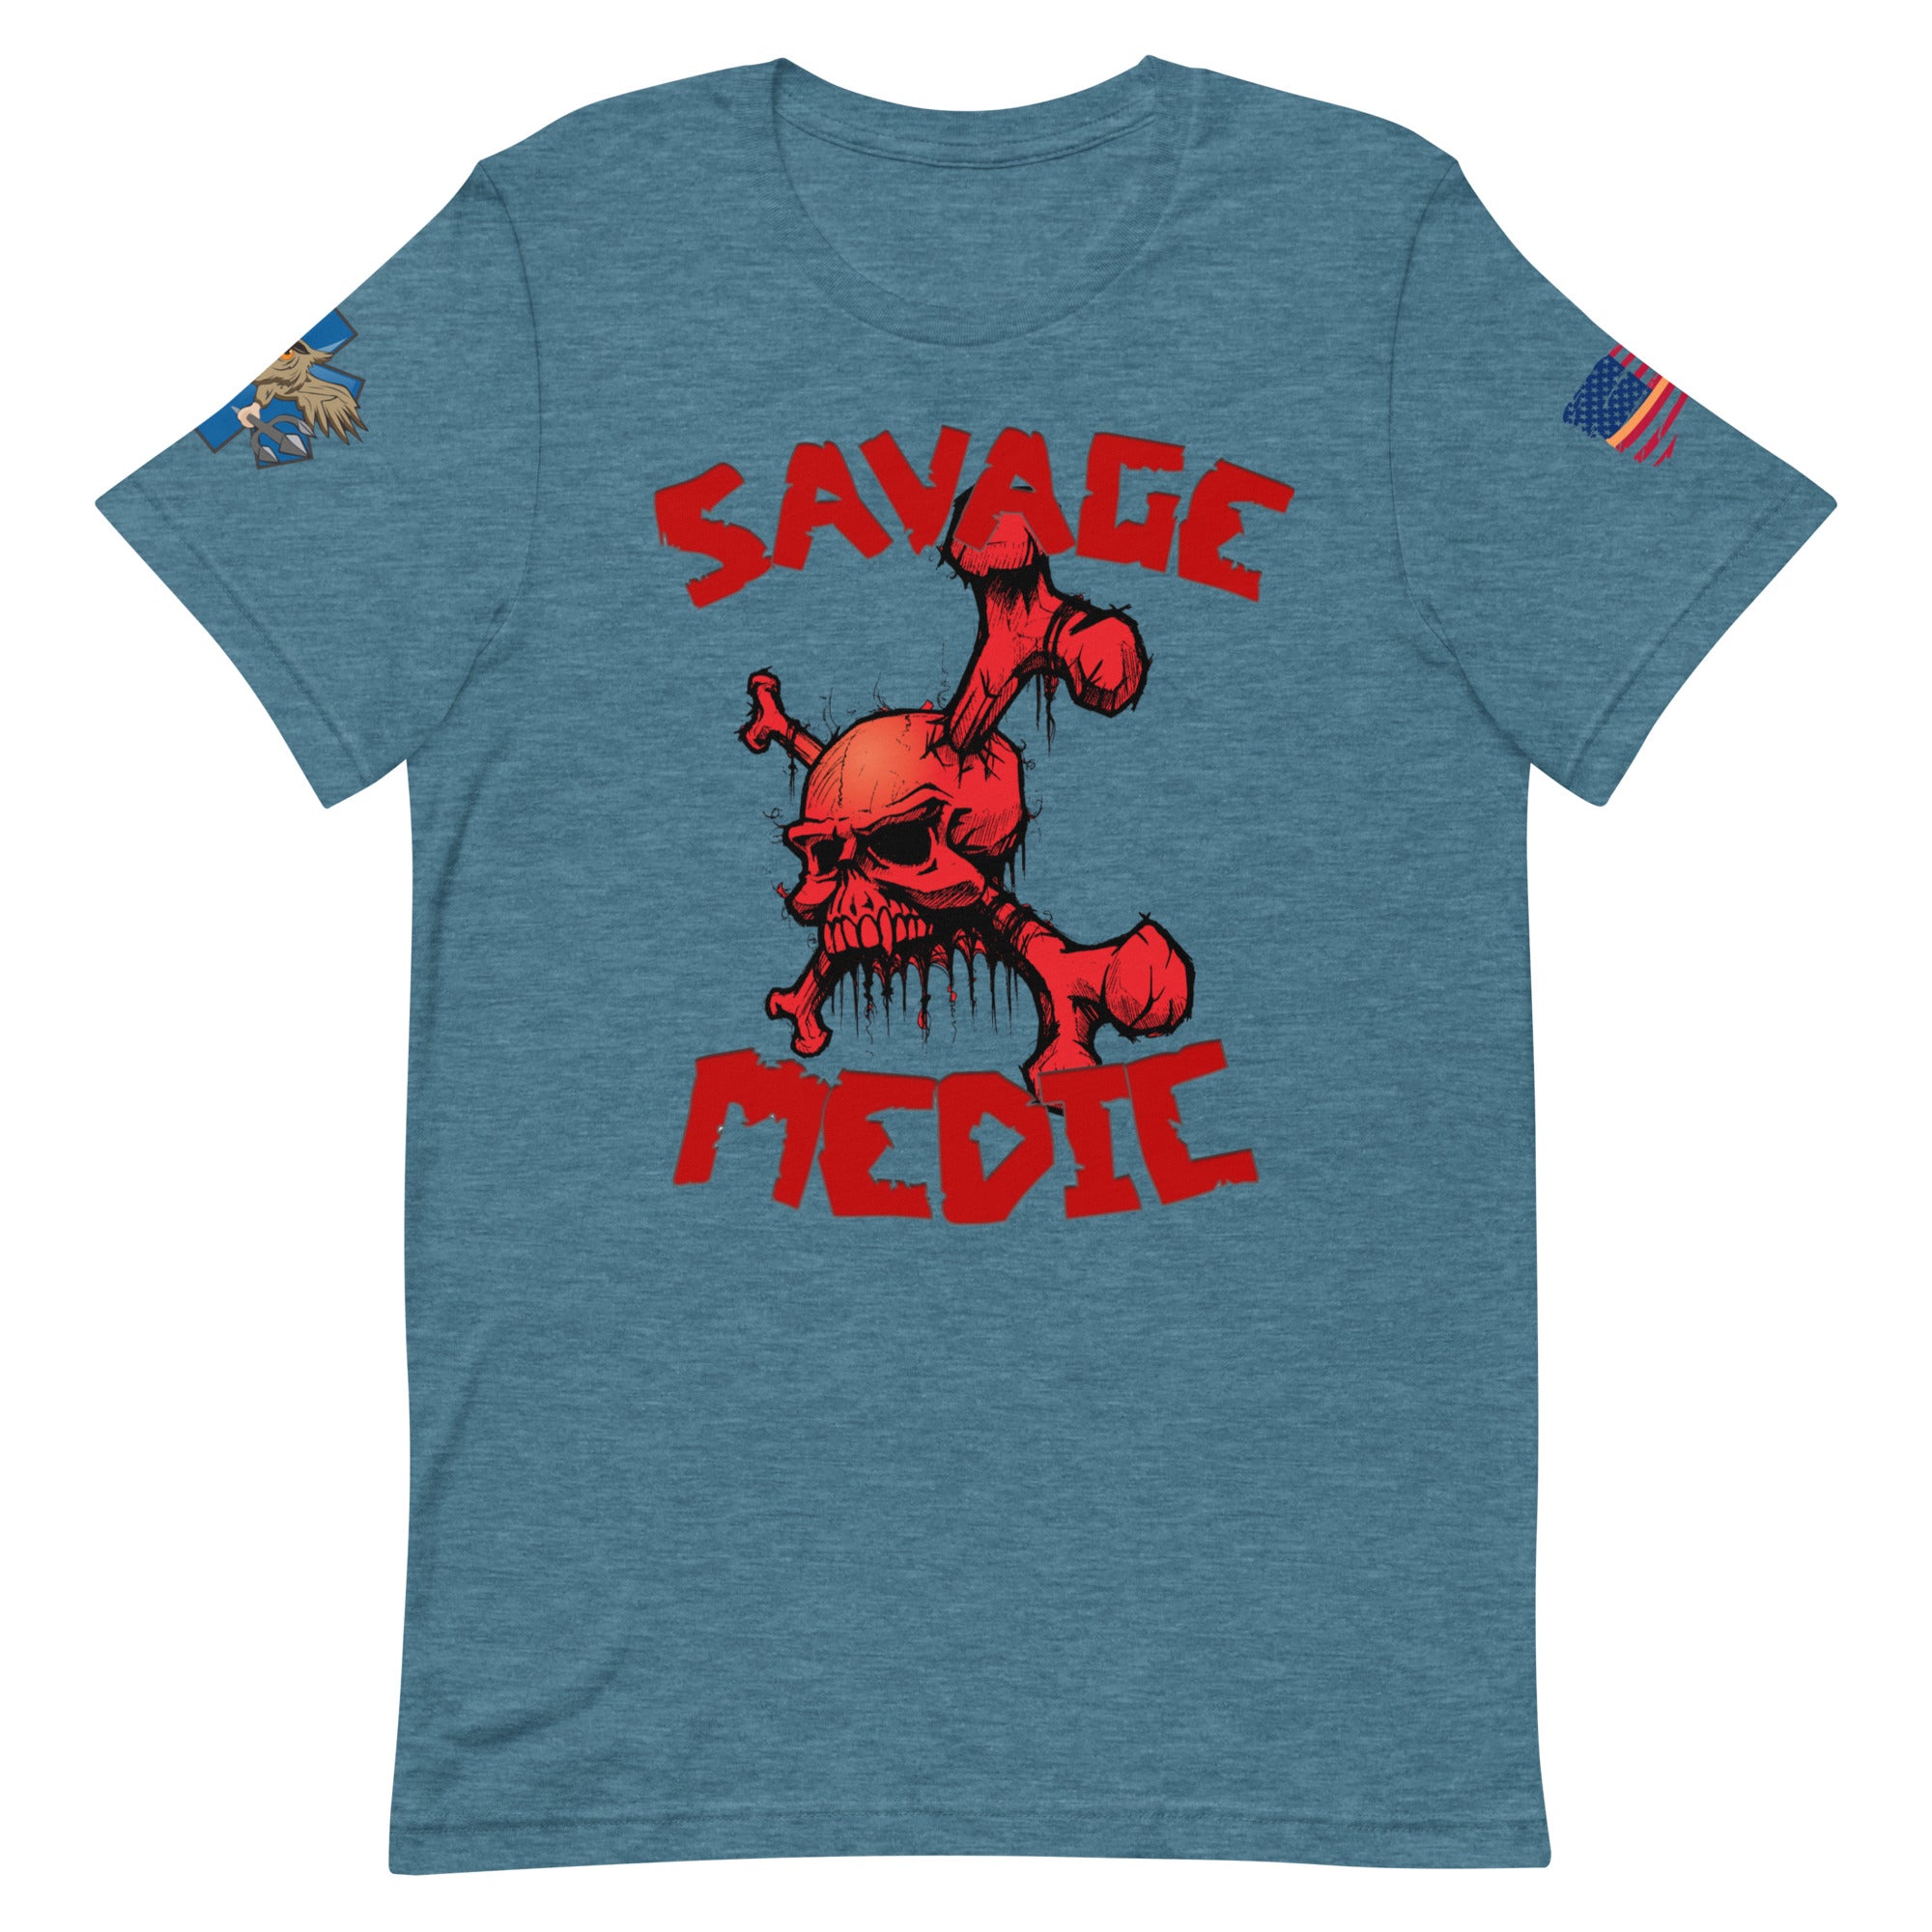 'Savage Medic' t-shirt